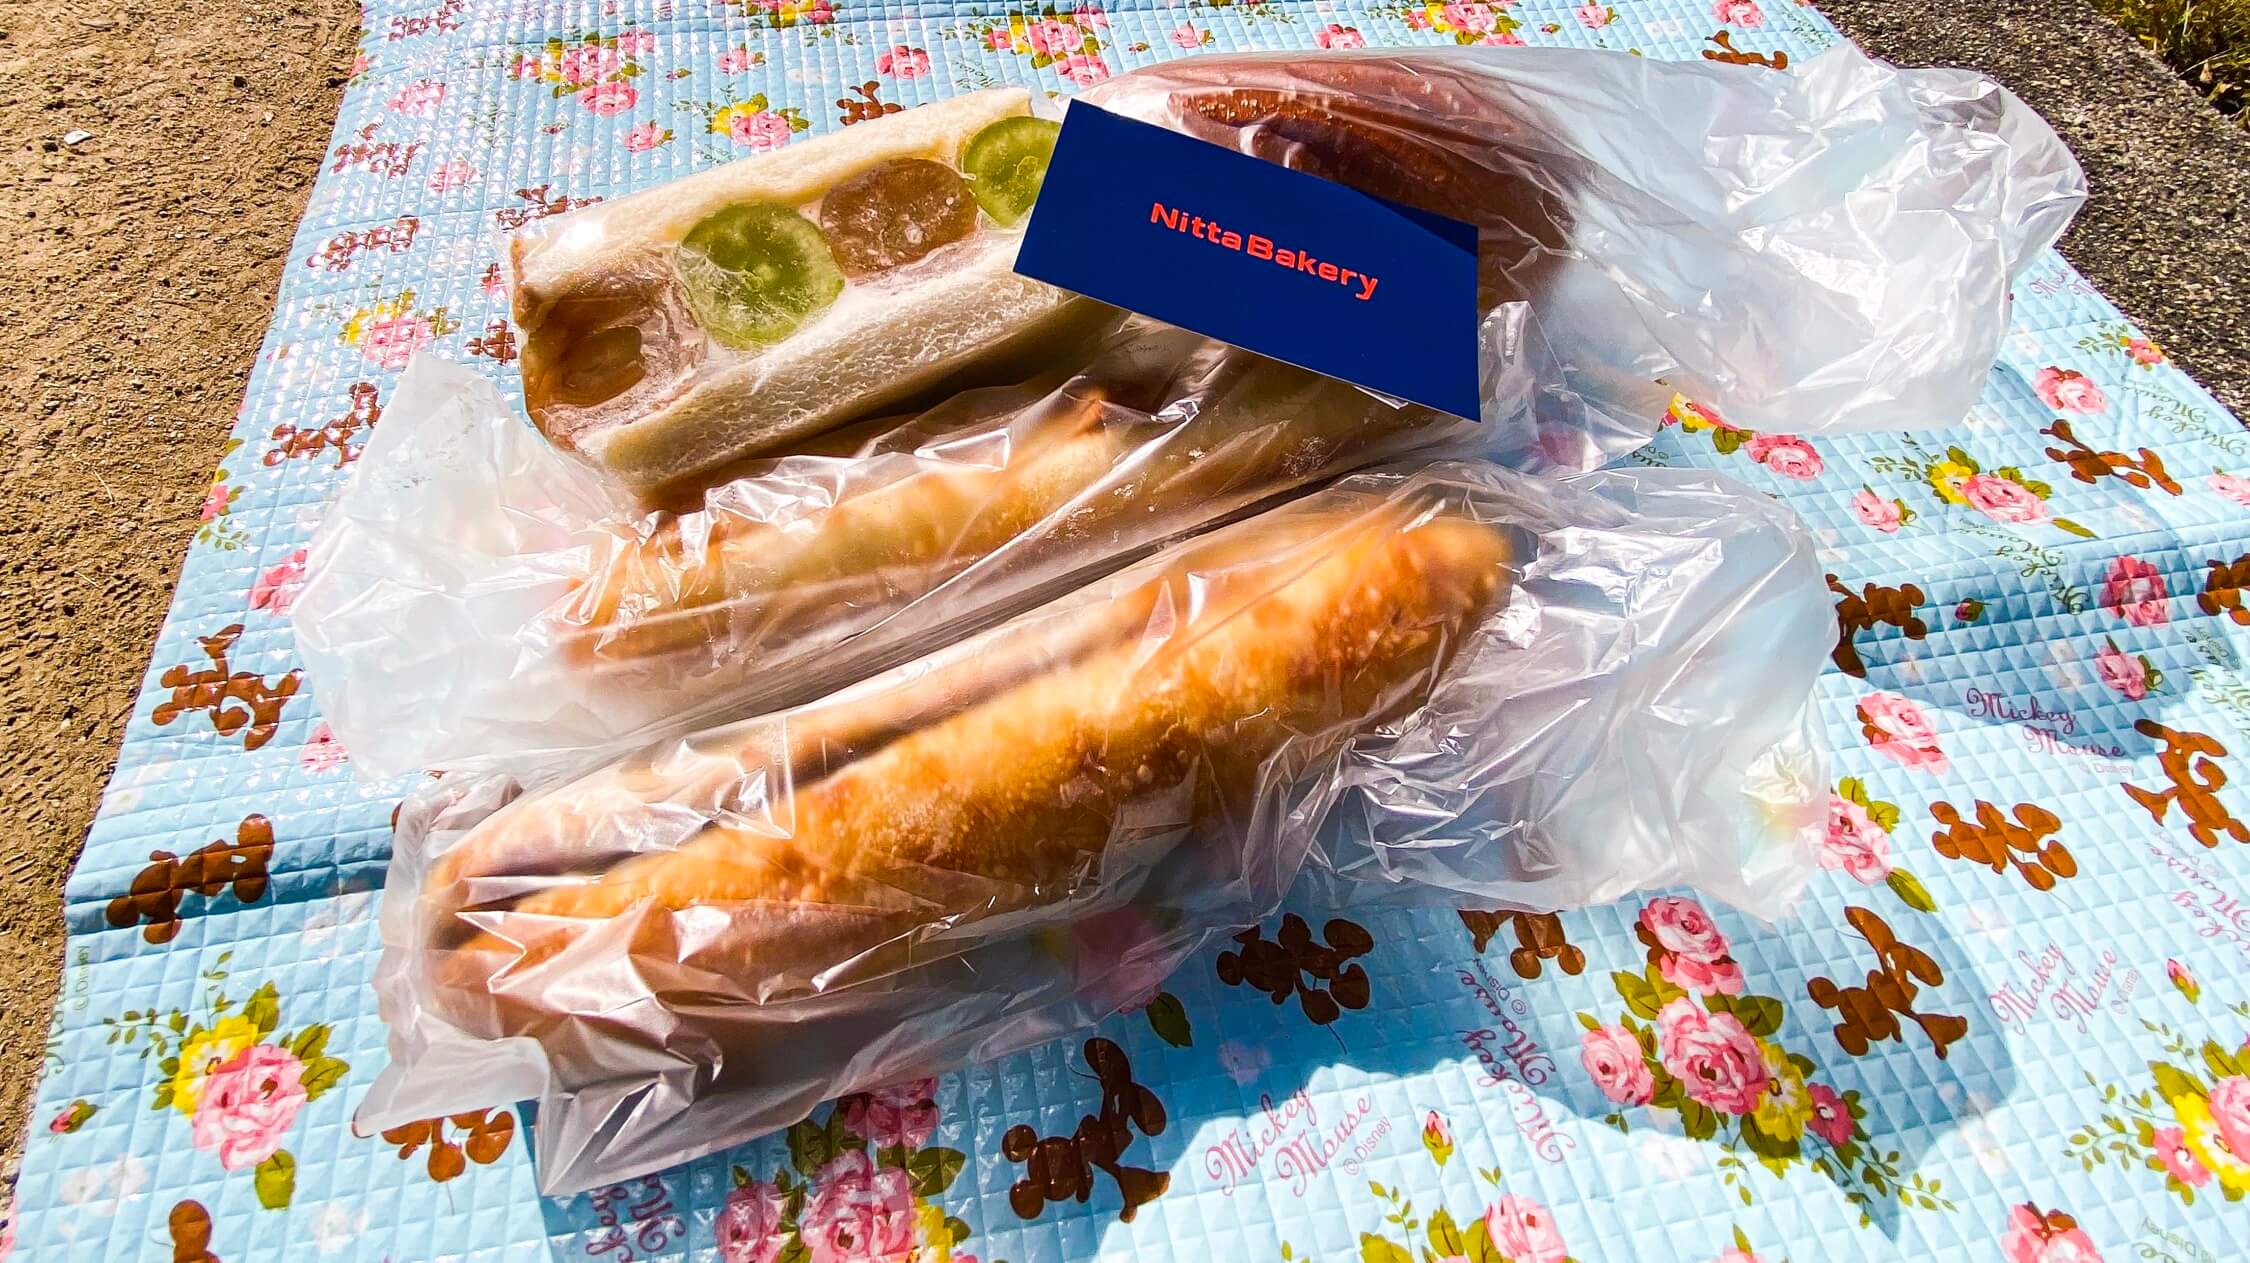 bread-nitta-bakery